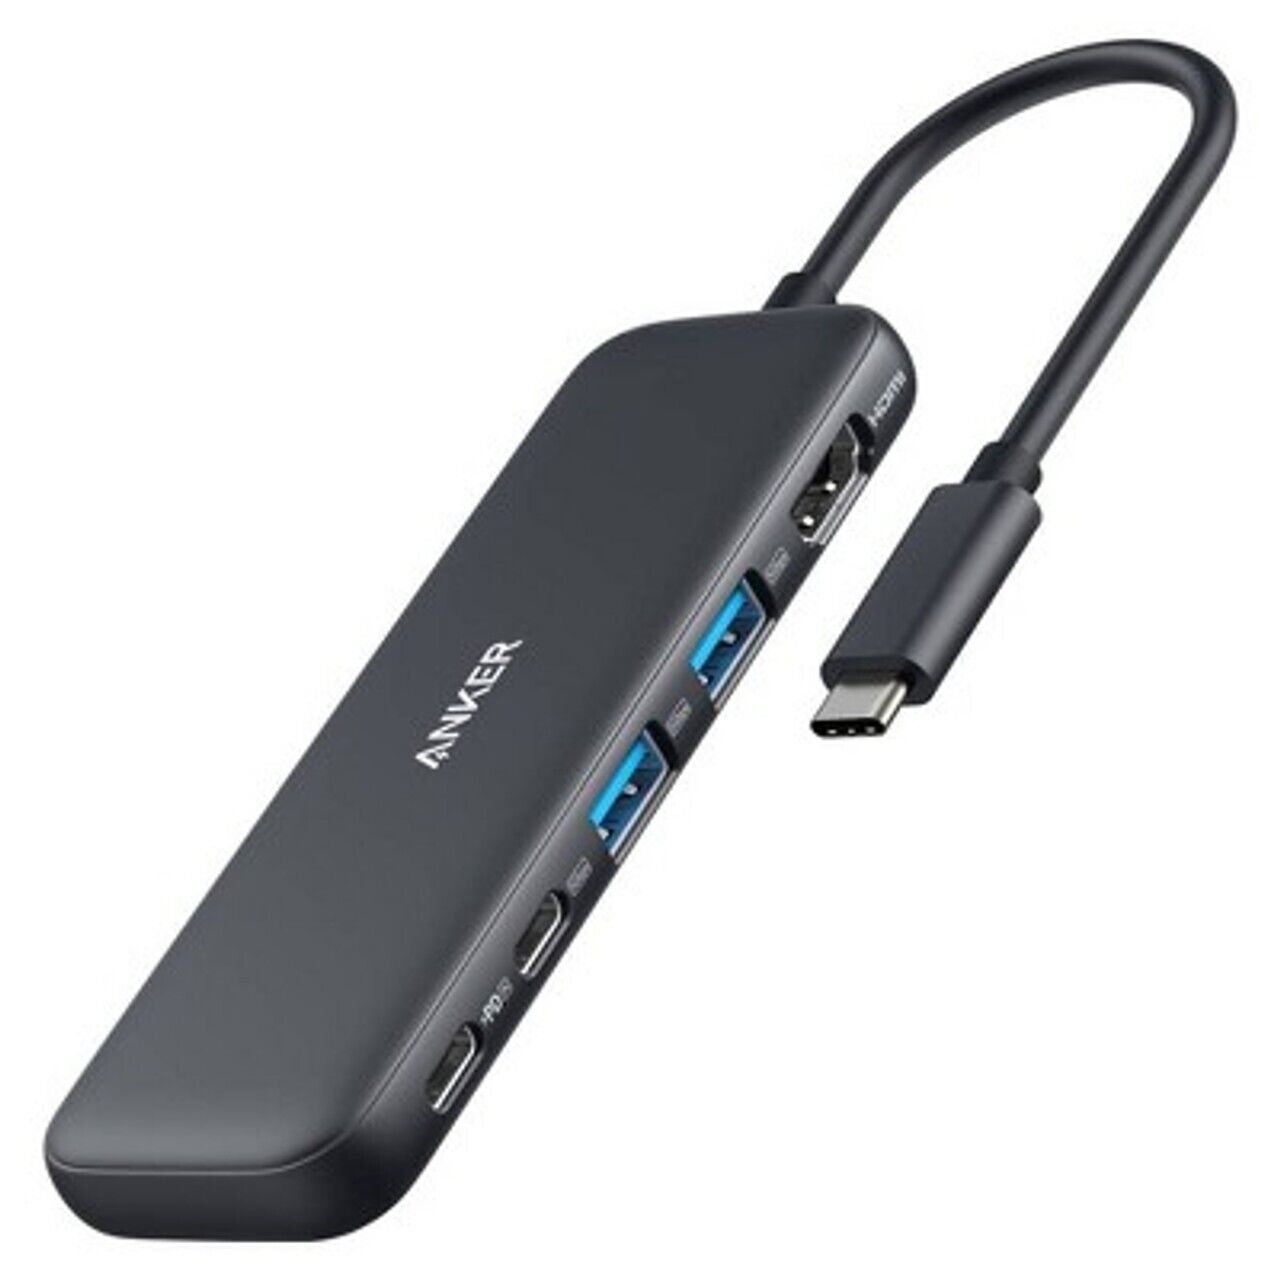 Anker 5-in-1 USB C Hub Adapter 4K HDMI, Ethernet Port, USB 3.0 for Laptop/Tablet